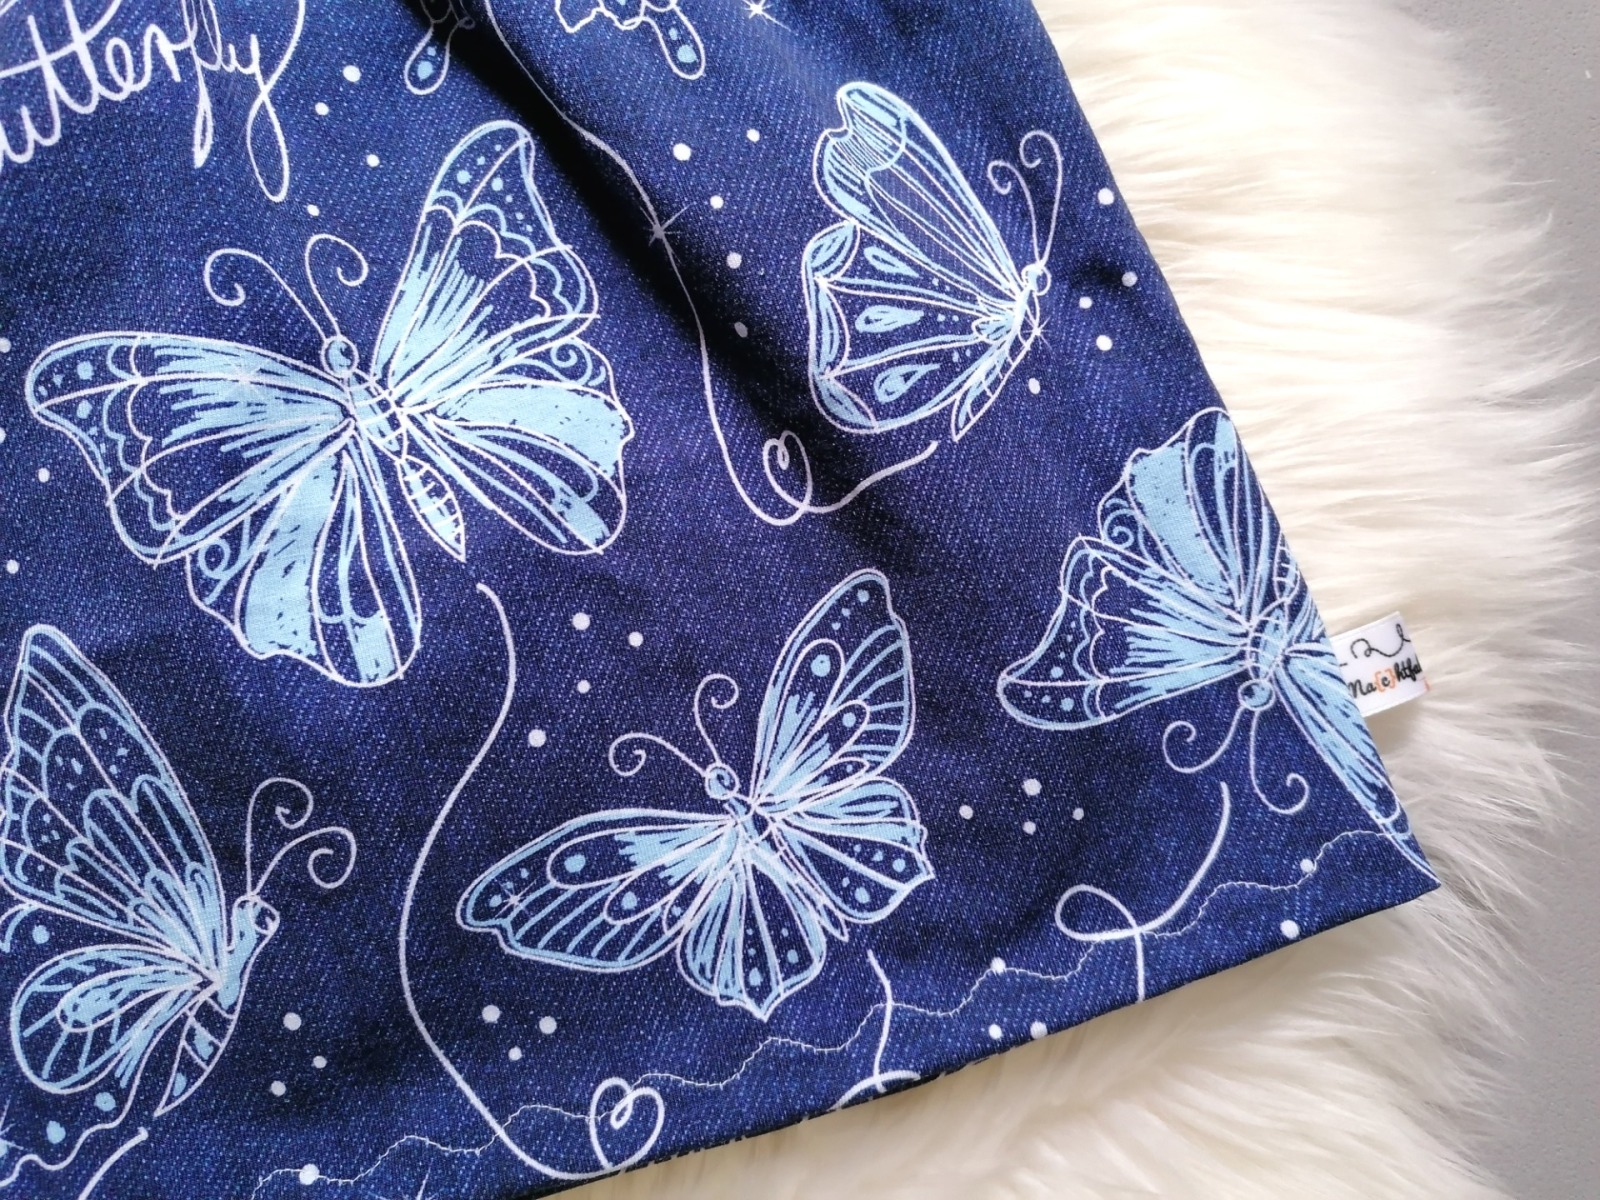 Baby Kind Latzrock für Mädchen Schmetterlinge Jeansoptik blau hellblau weiß Größe 56 bis 128 Latzkleid mit verstellbaren Trägern 4